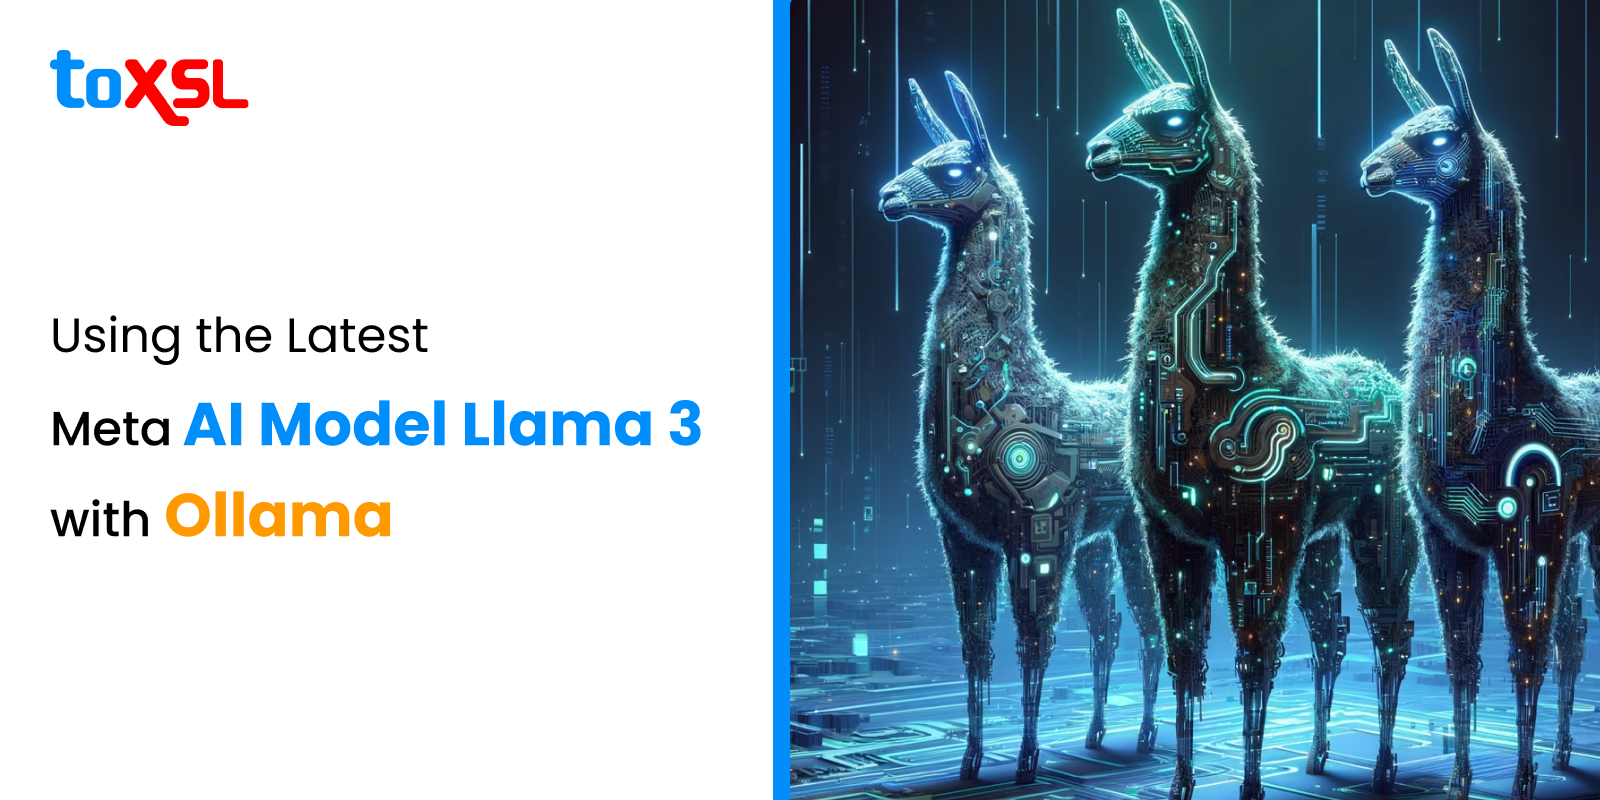 Using latest Meta AI model Llama 3 with Ollama